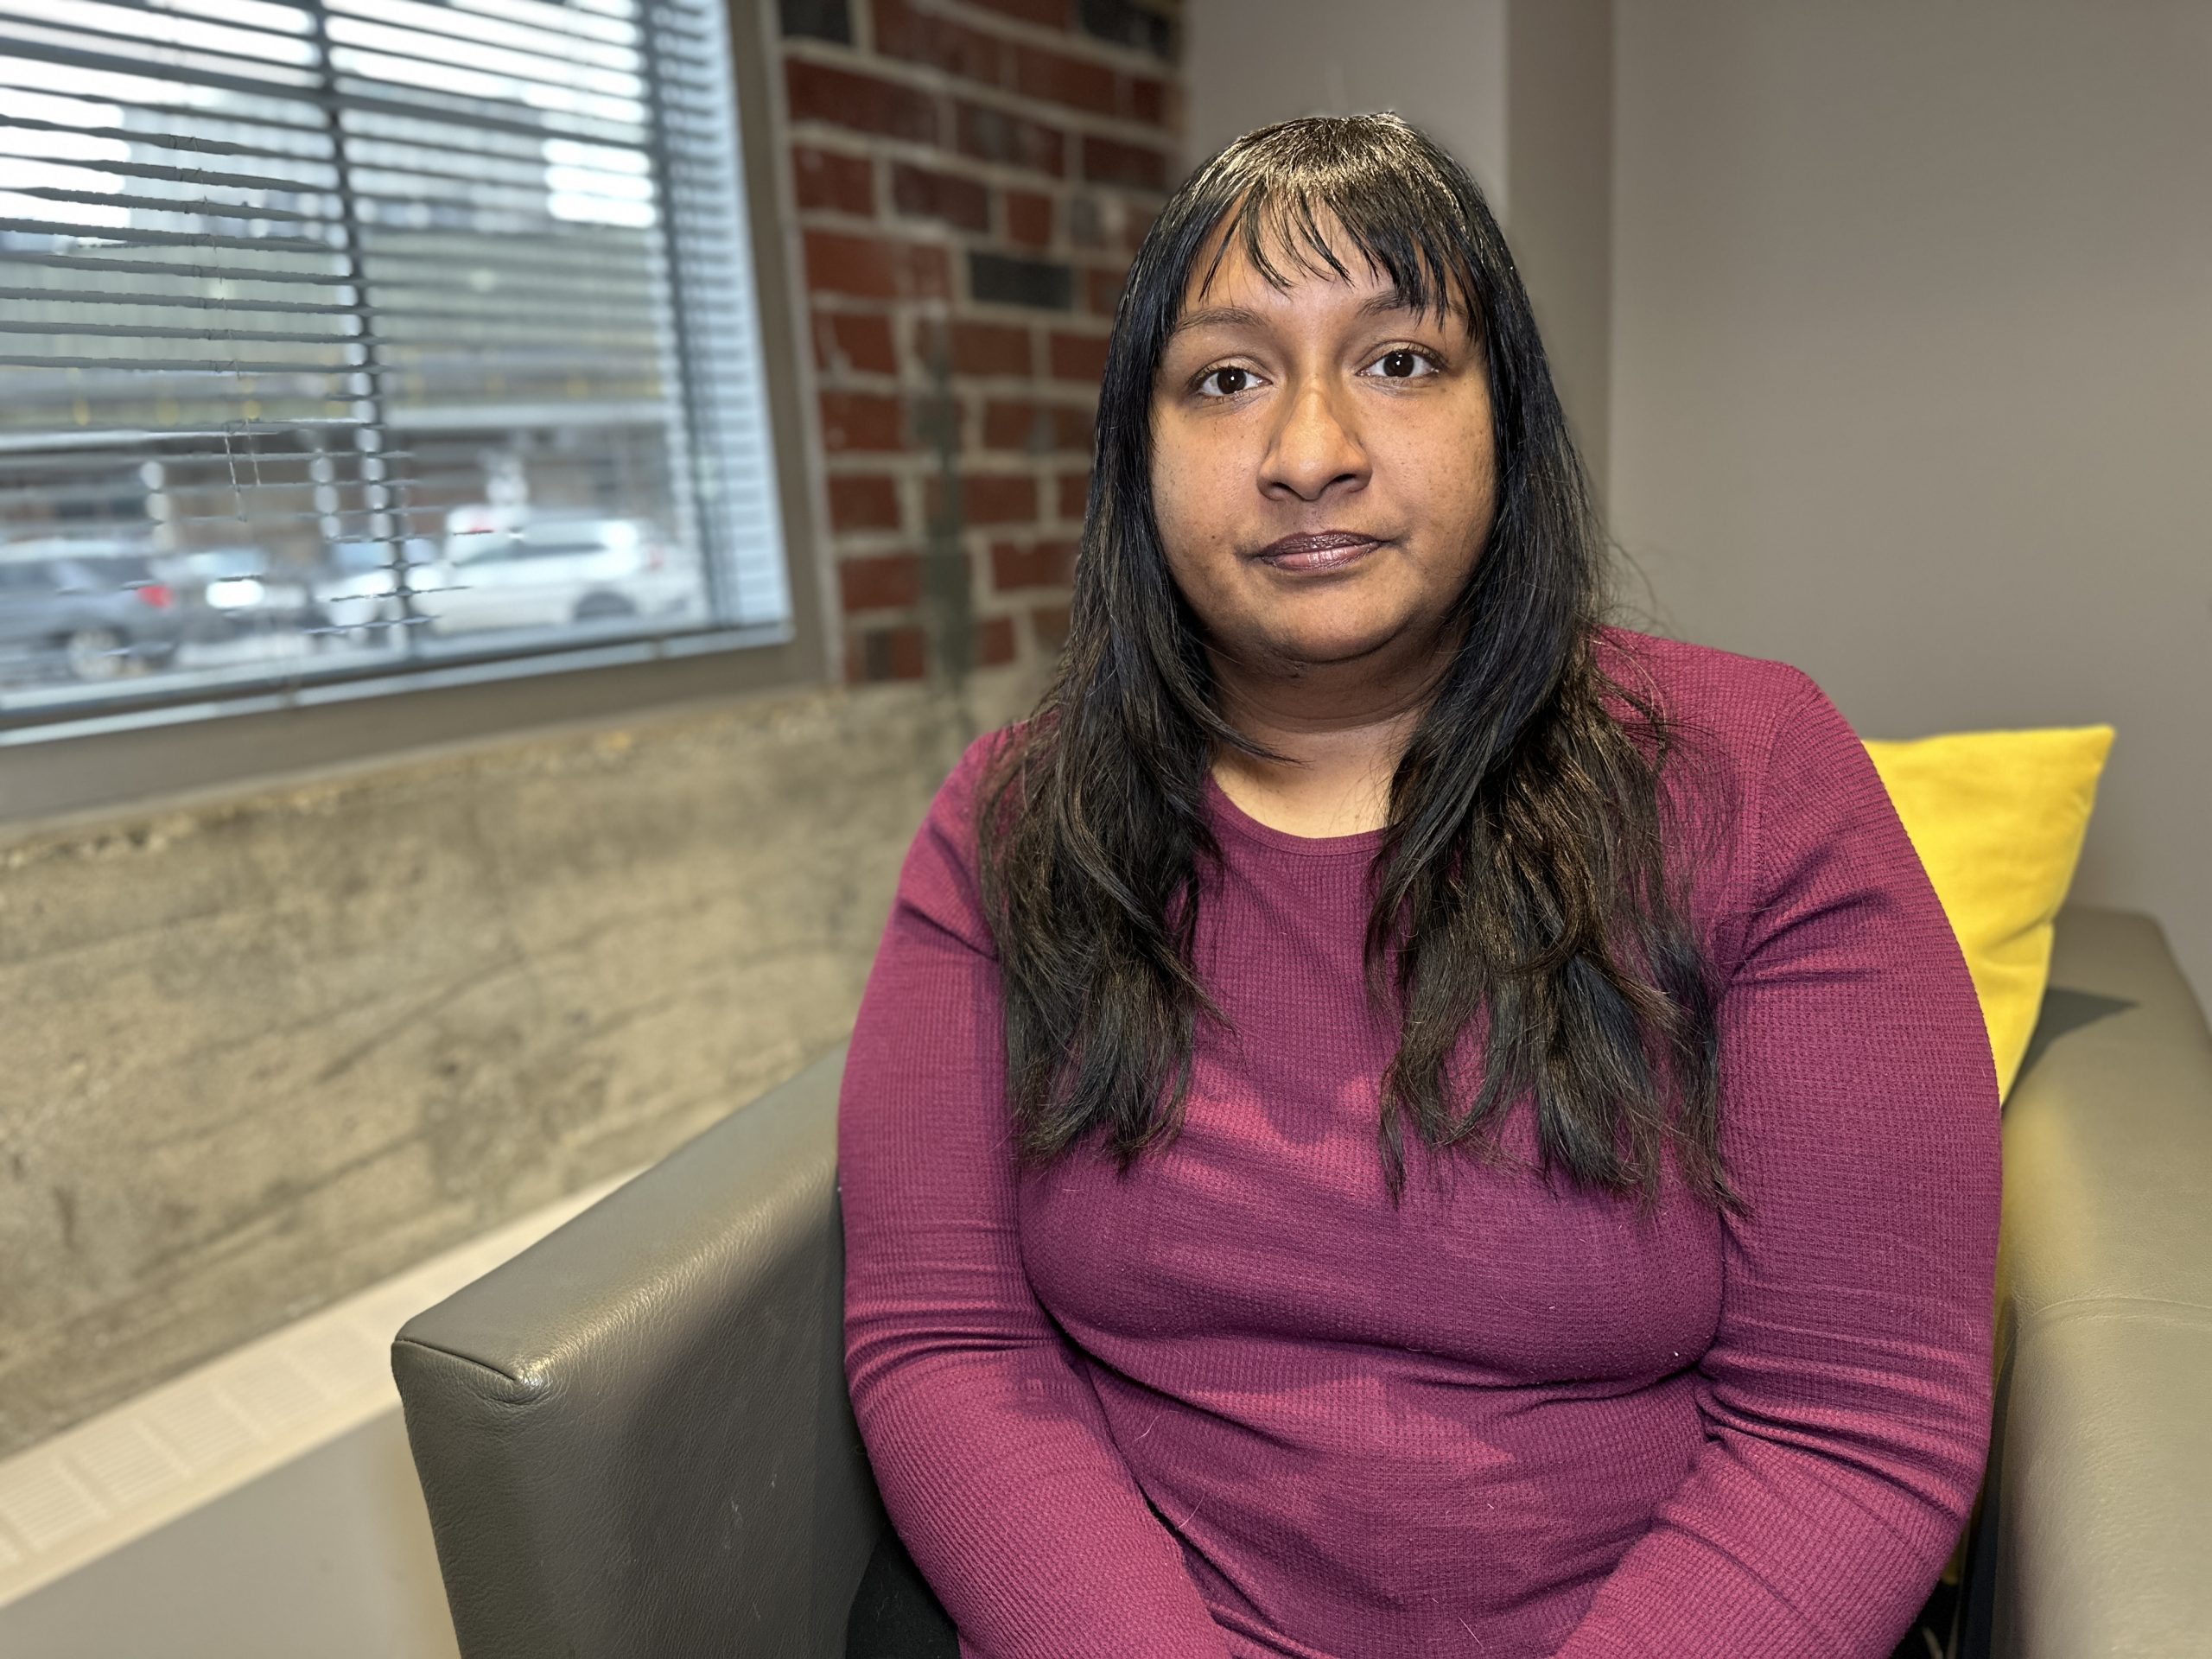 Mujer de Winnipeg retrasa recibir atención médica urgente debido a la larga espera en la sala de emergencias;  Insta a otros a no hacer lo mismo